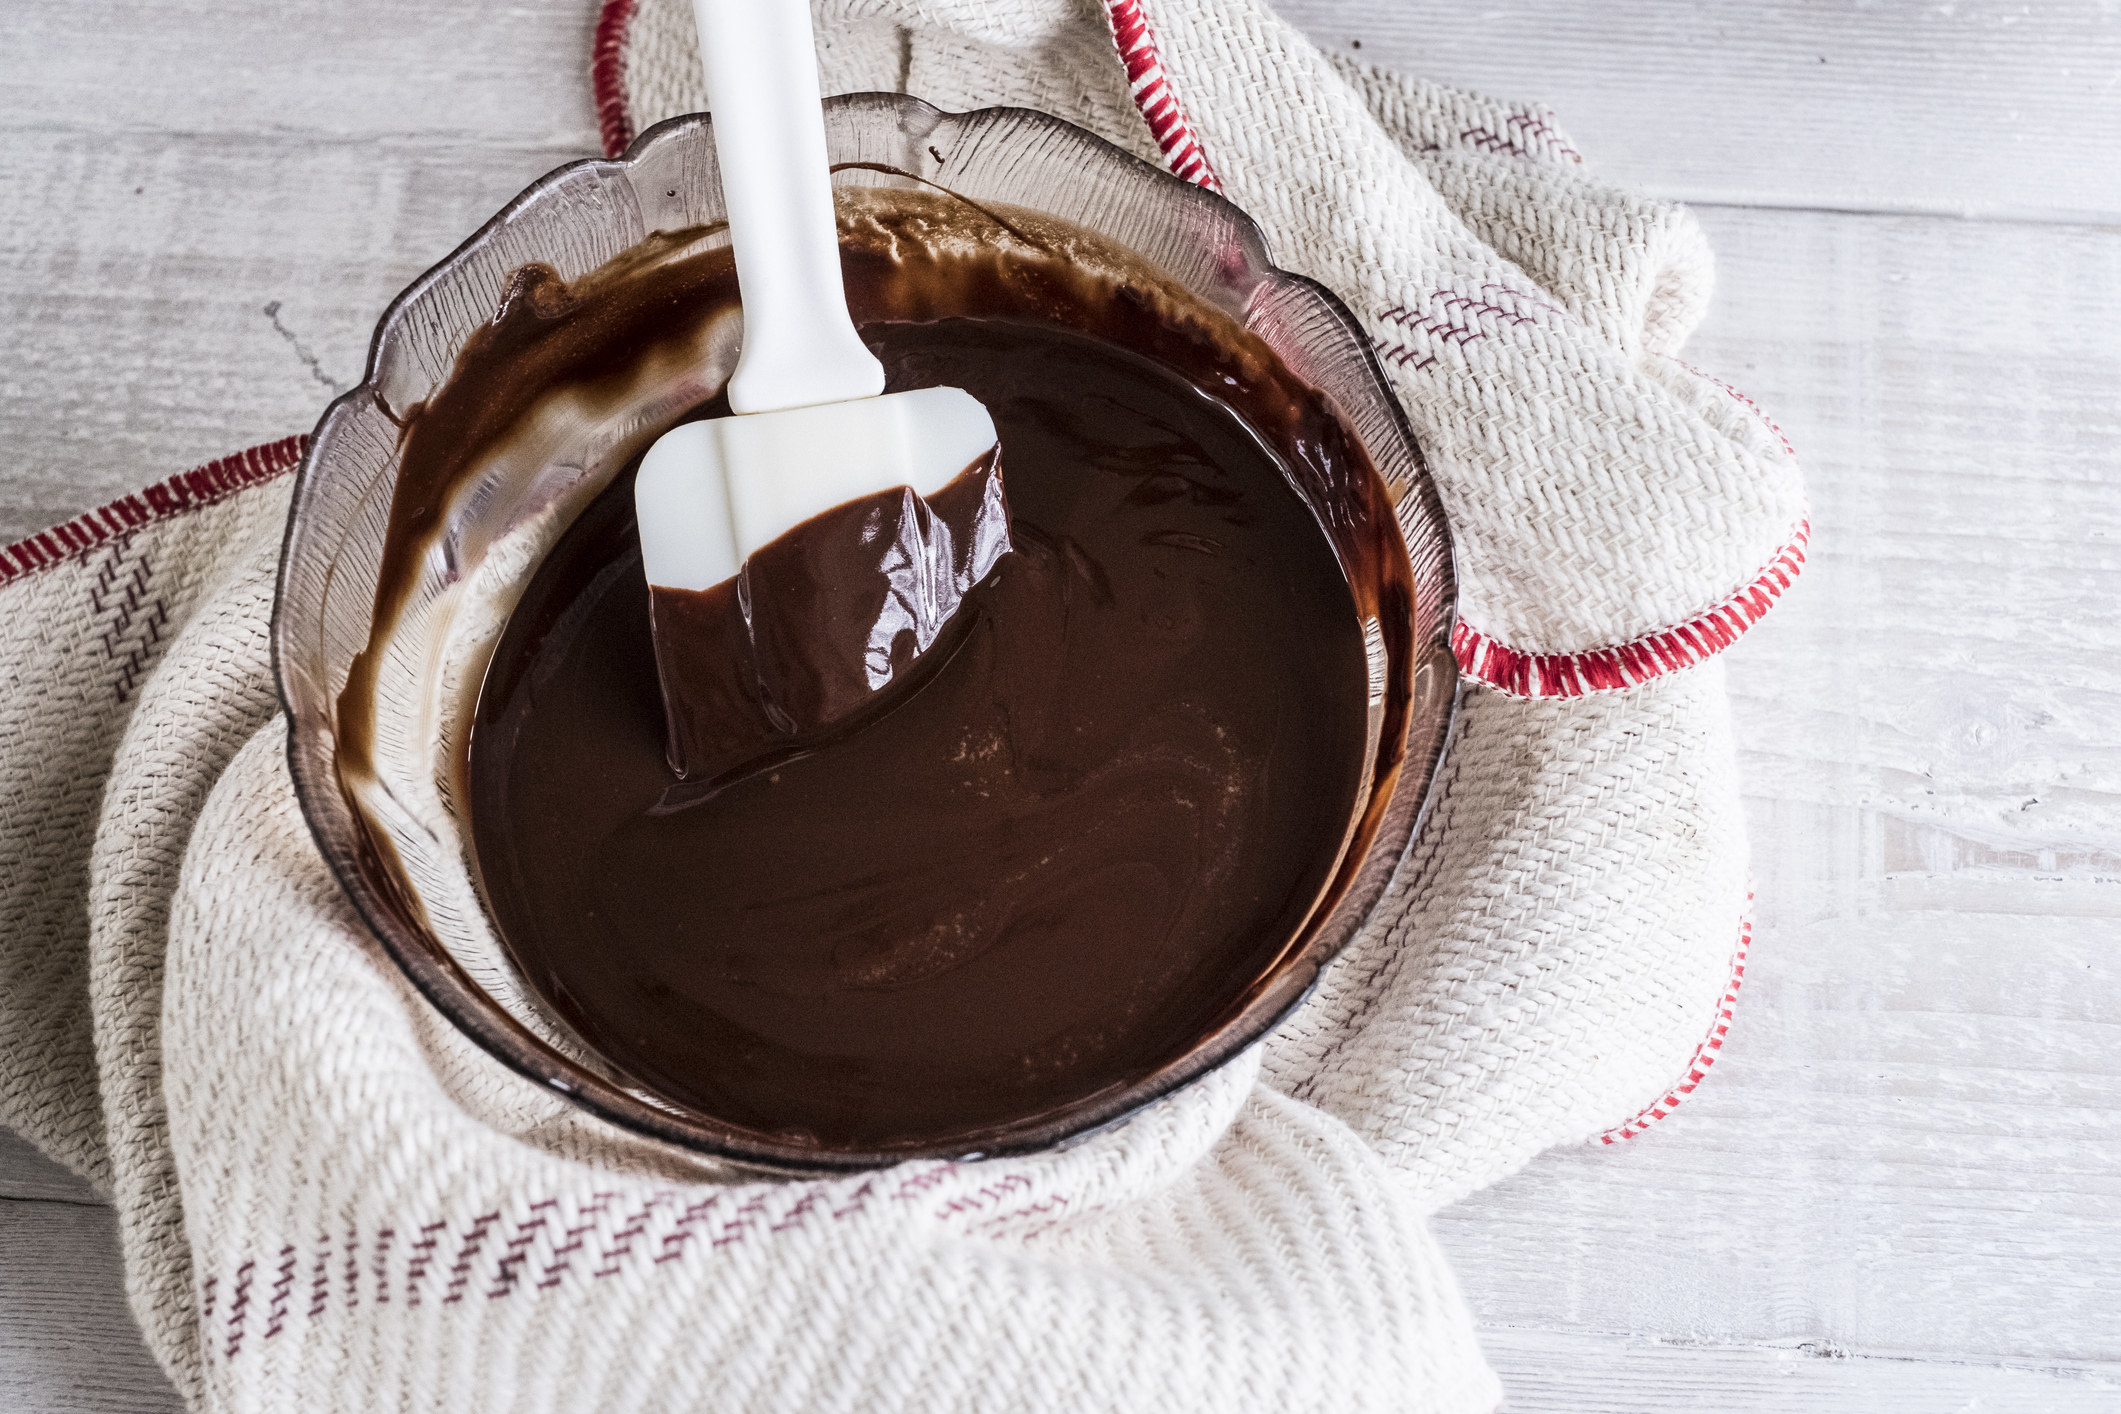 A bowl of chocolate brownie ingredients being stirred.